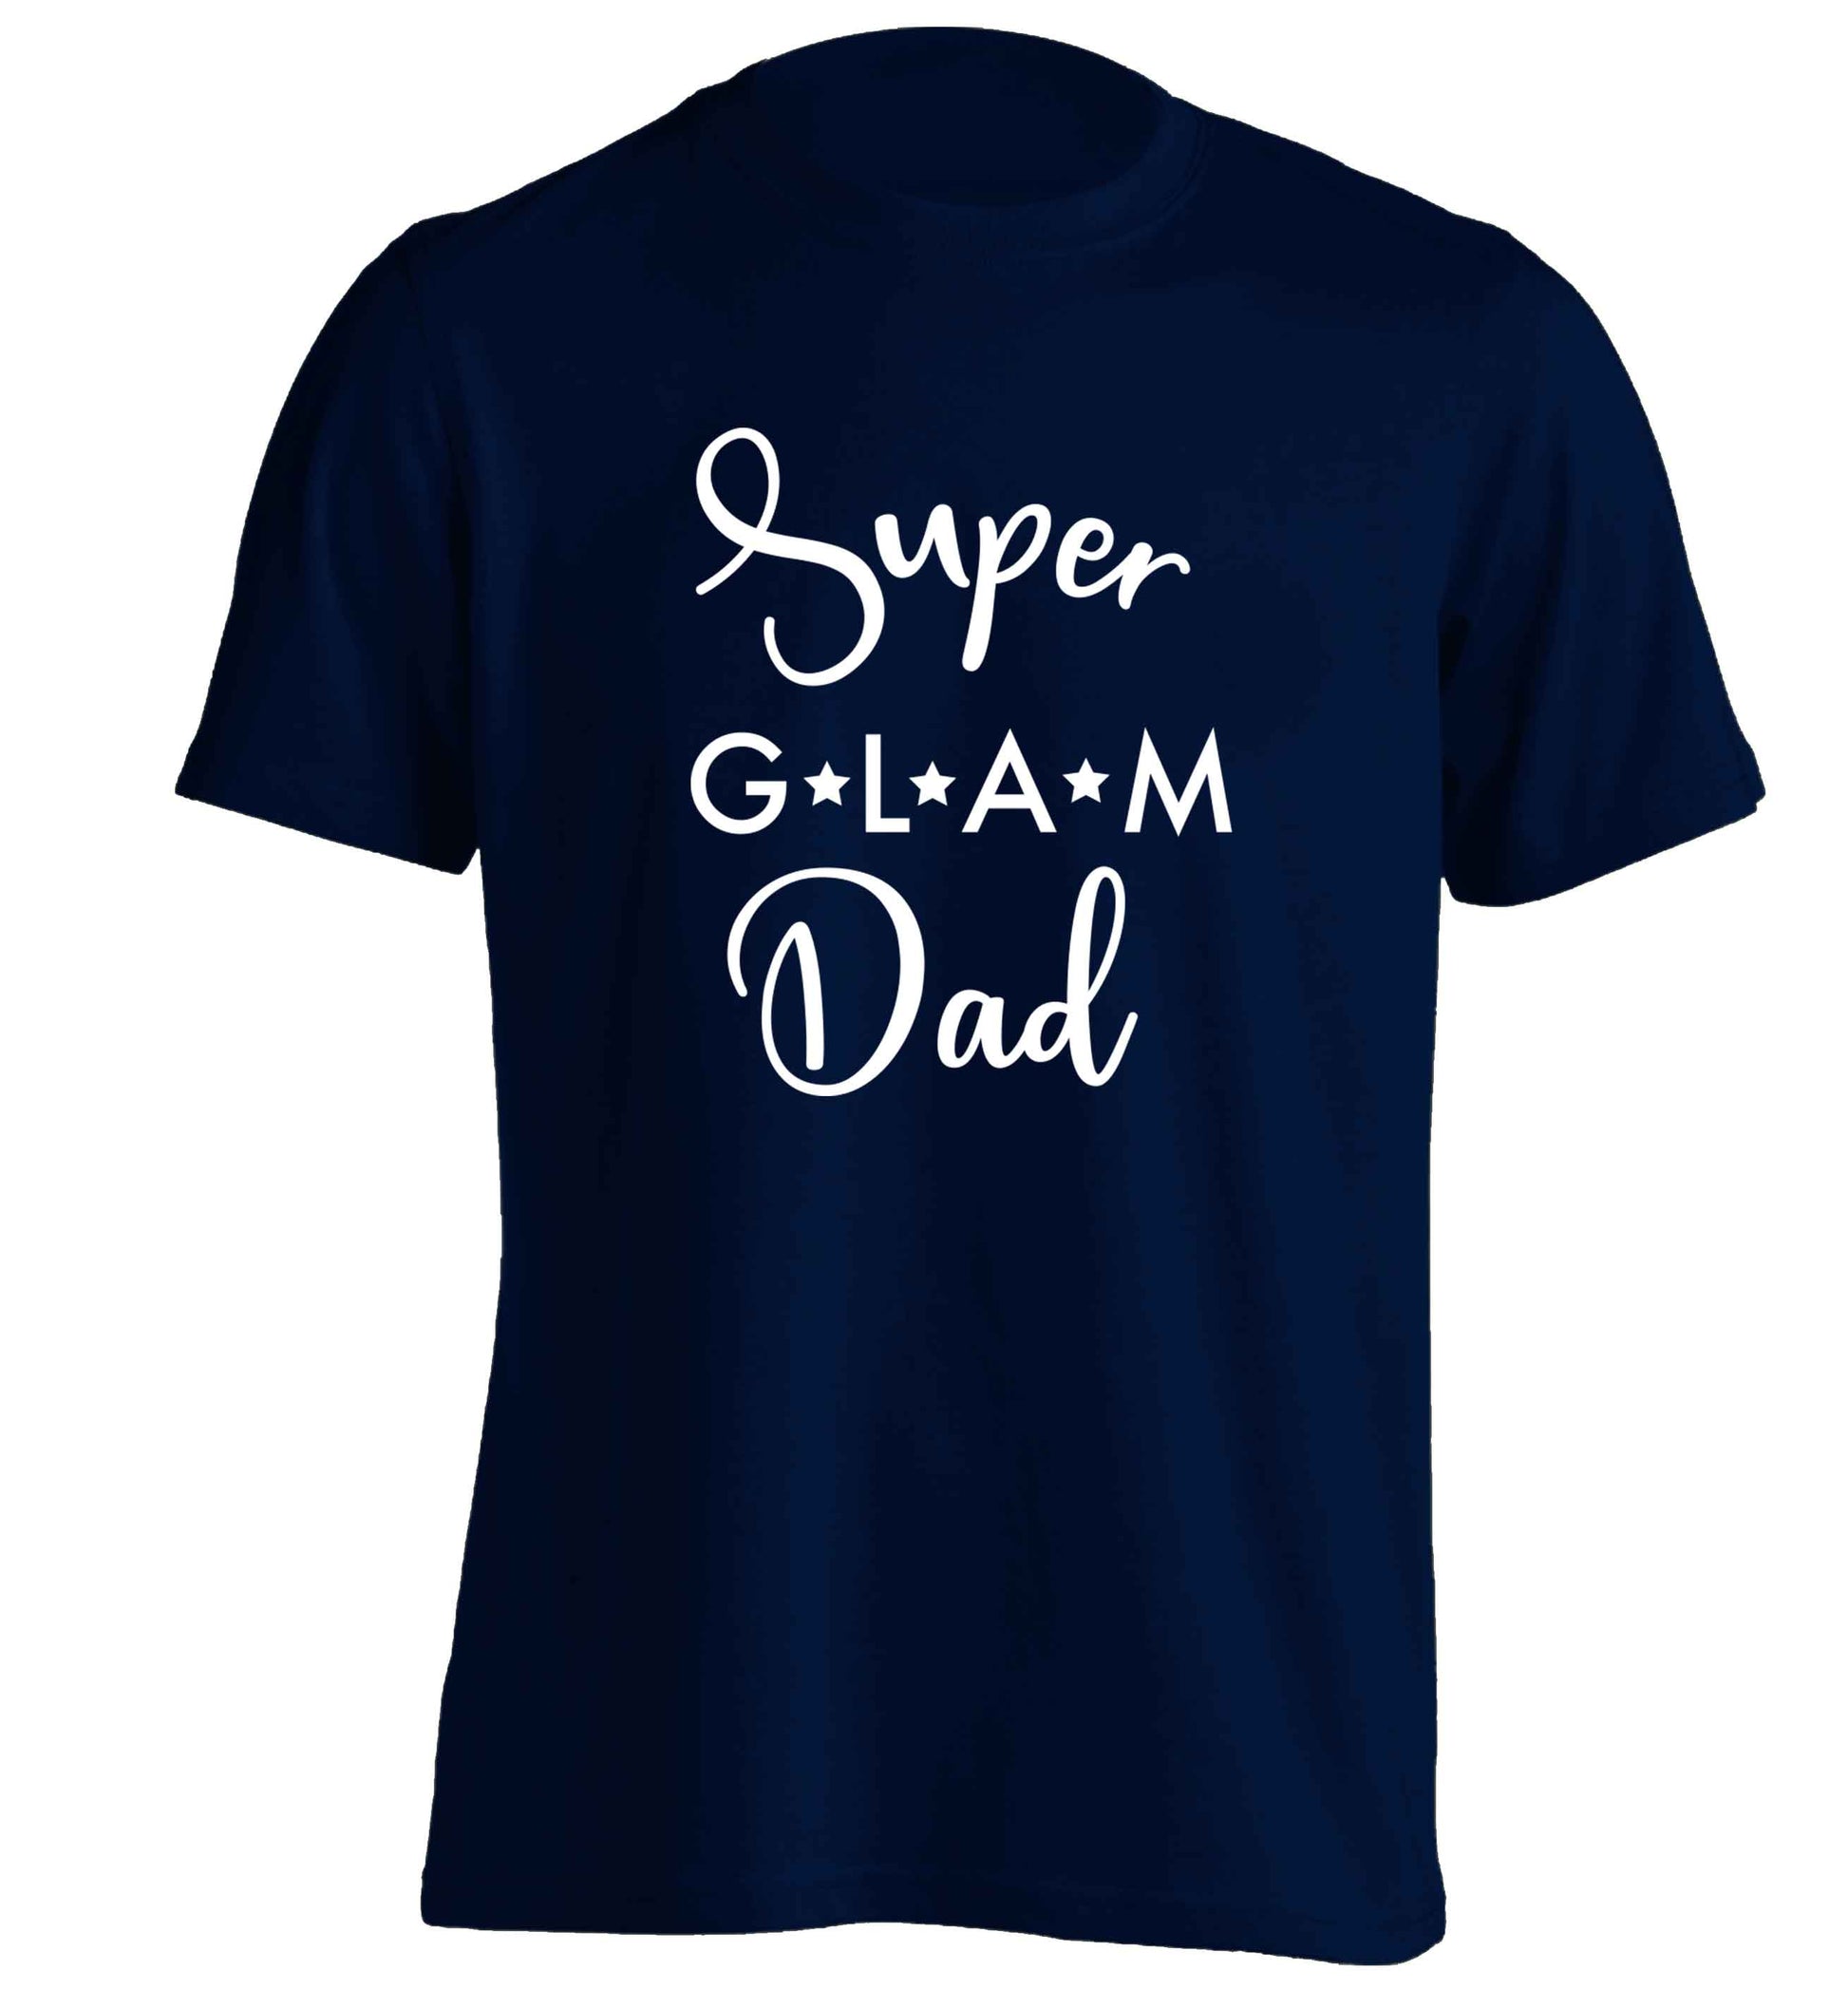 Super glam Dad adults unisex navy Tshirt 2XL